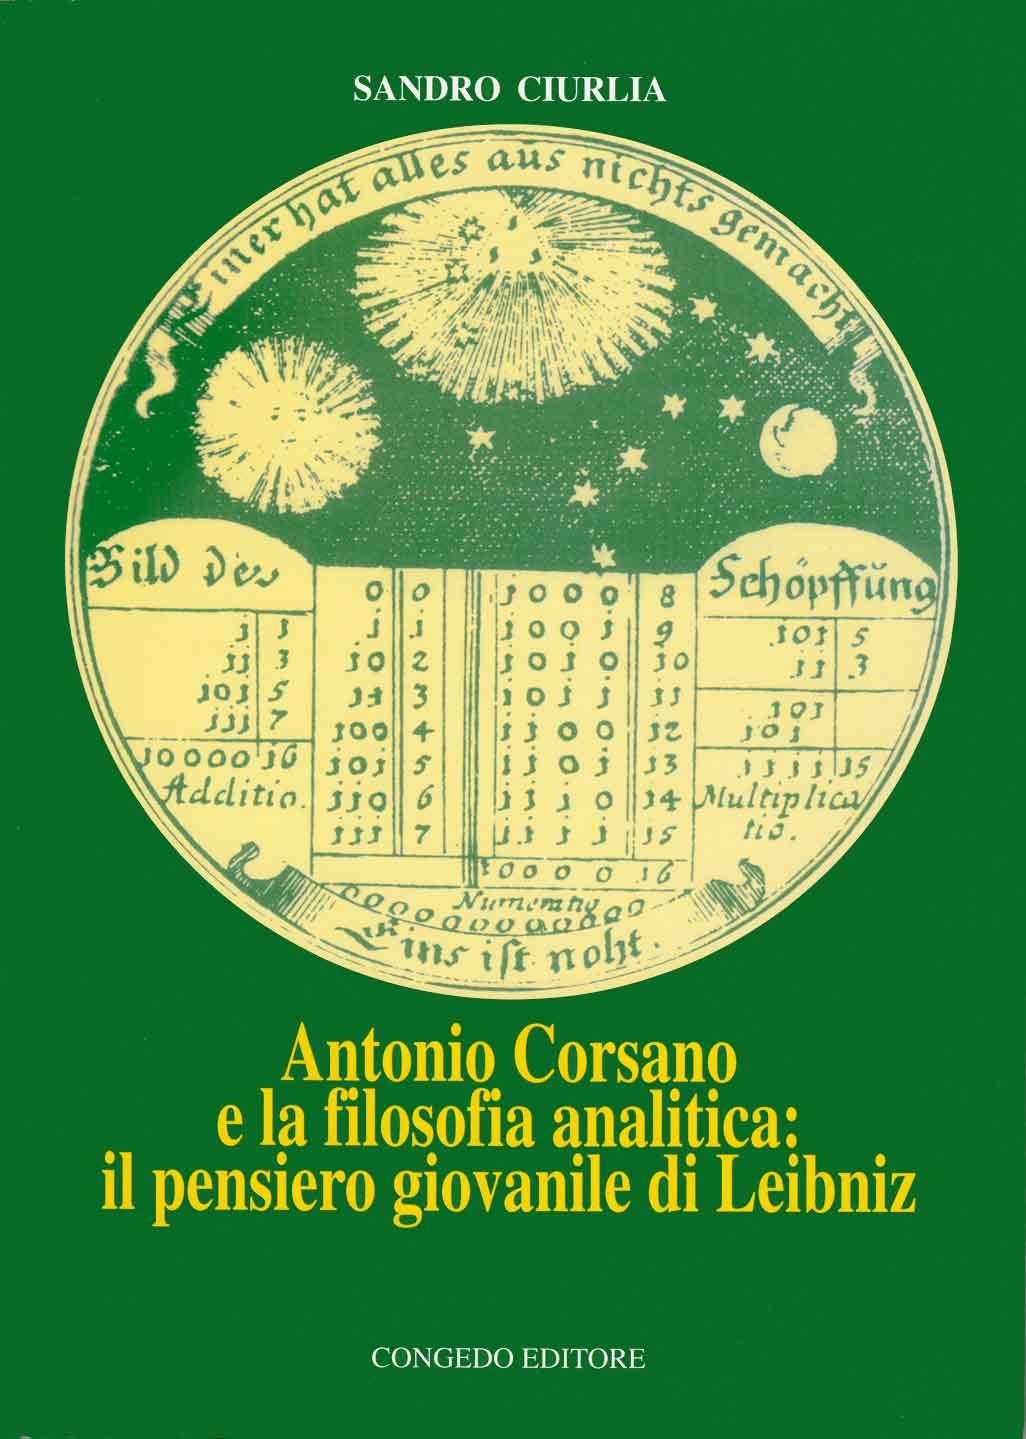 Antonio Corsano e la filosofia analitica: il pensiero giovanile di Leibniz